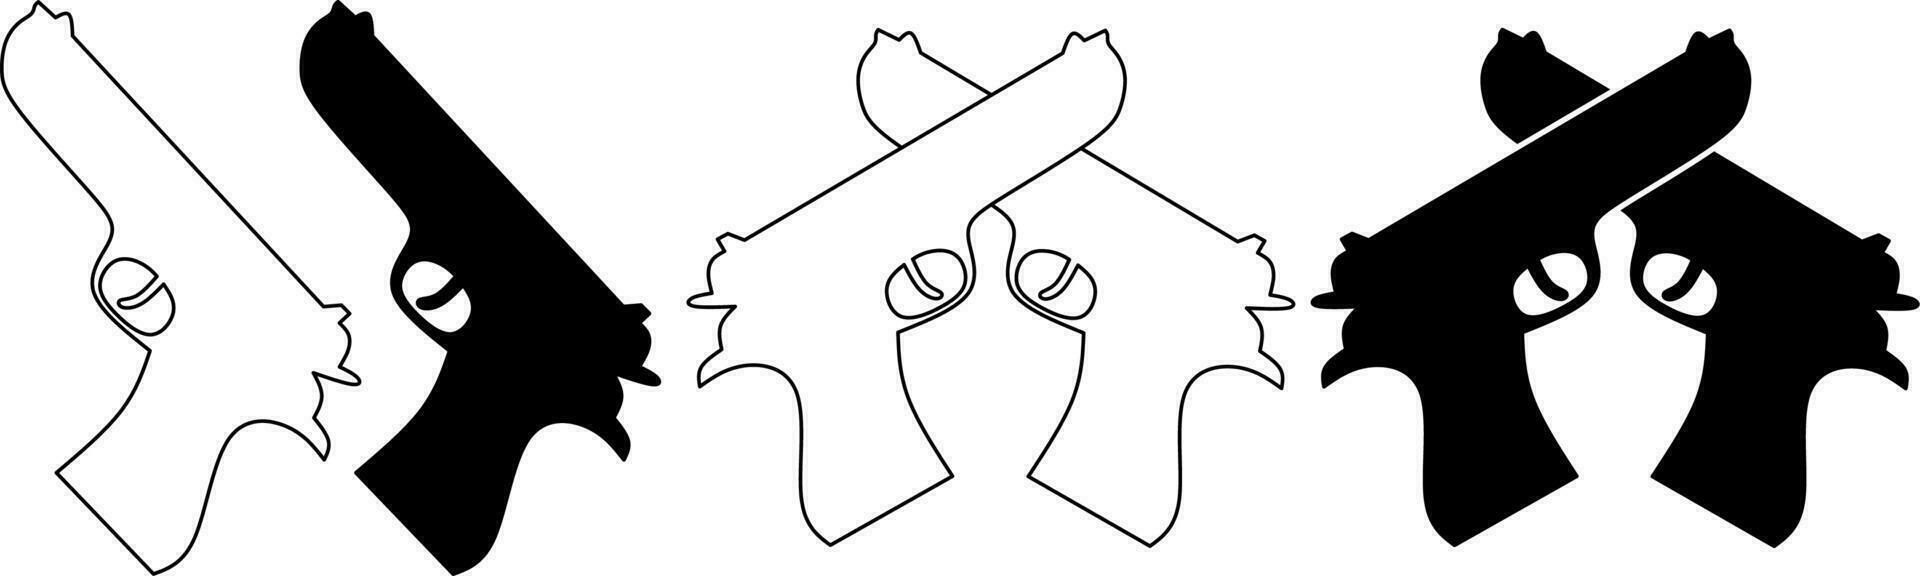 schema silhouette attraversato pistola icona impostato vettore